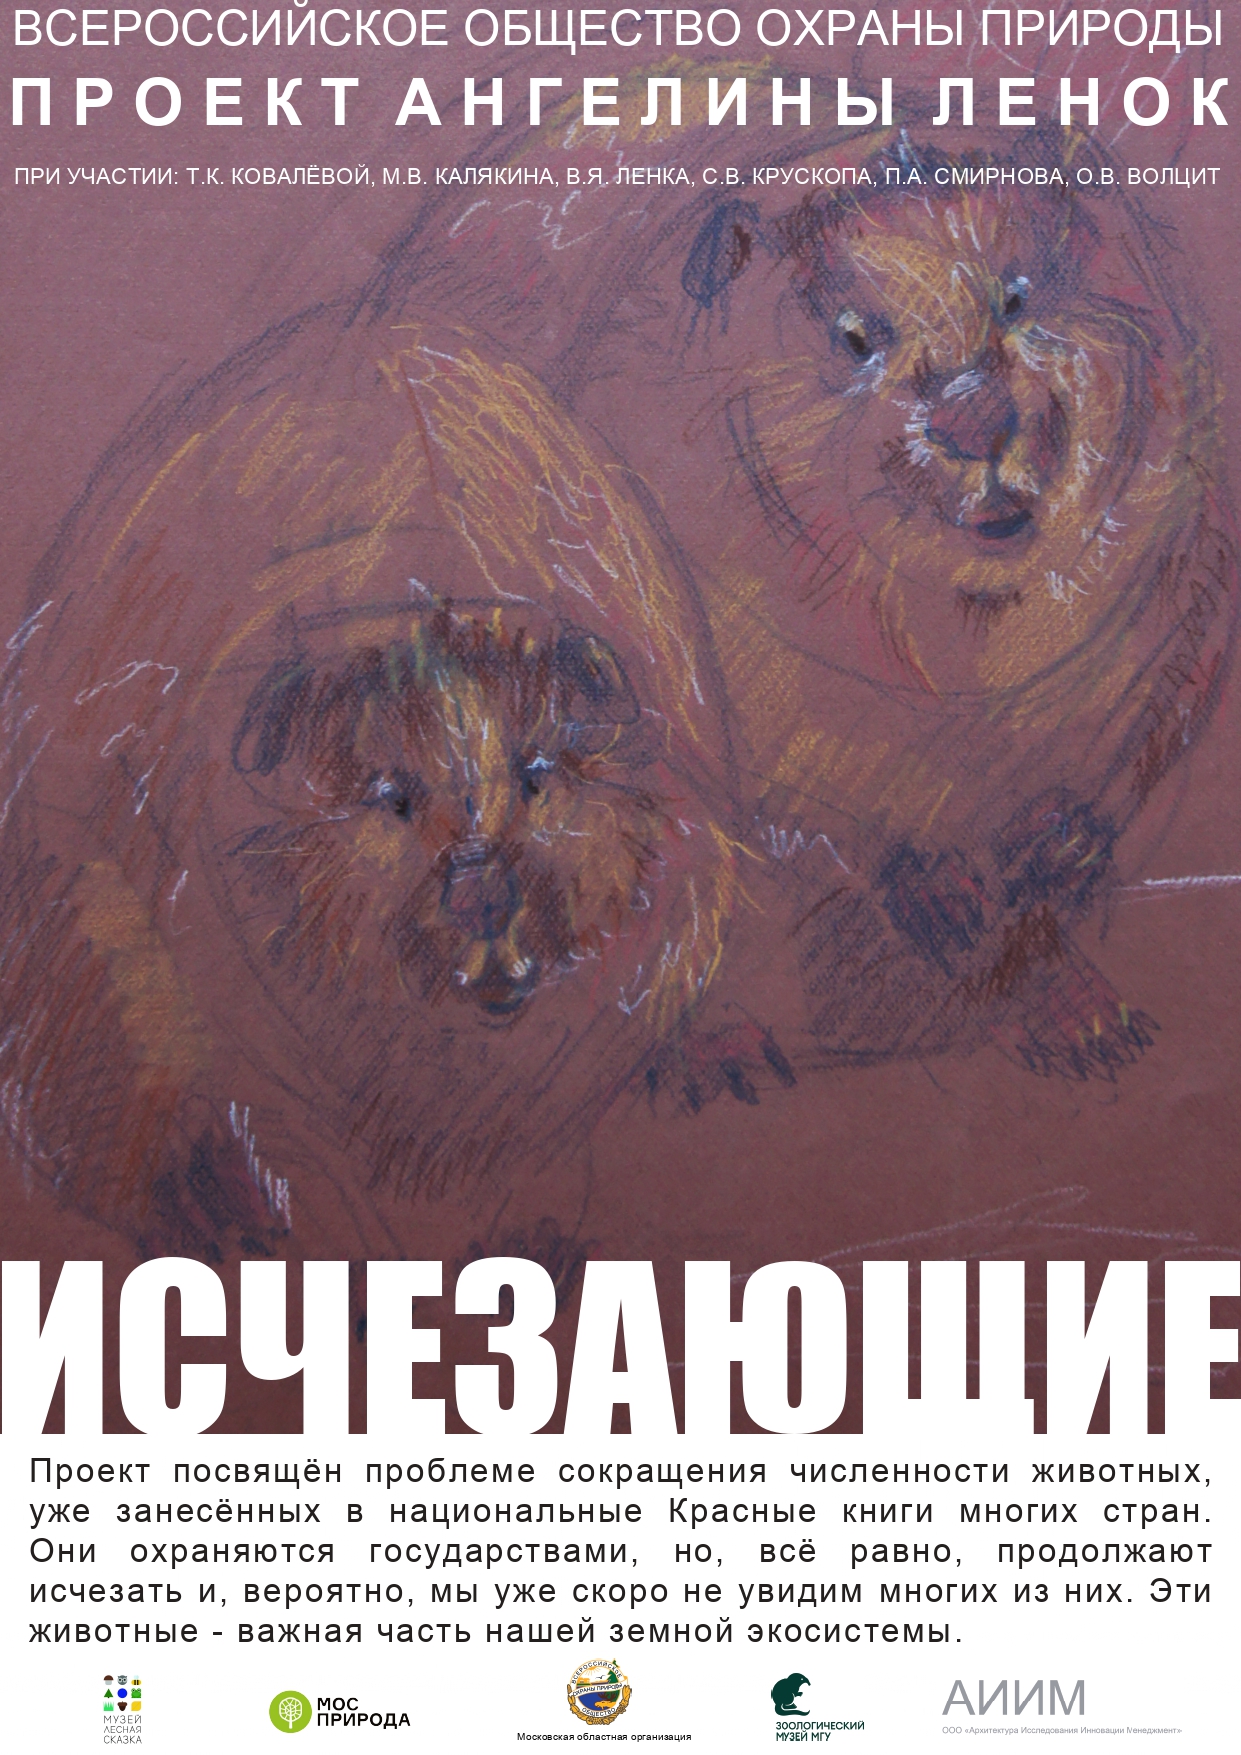 Исчезающие: в Москве открылась уникальная выставка, посвящённая редким животным - фото 1